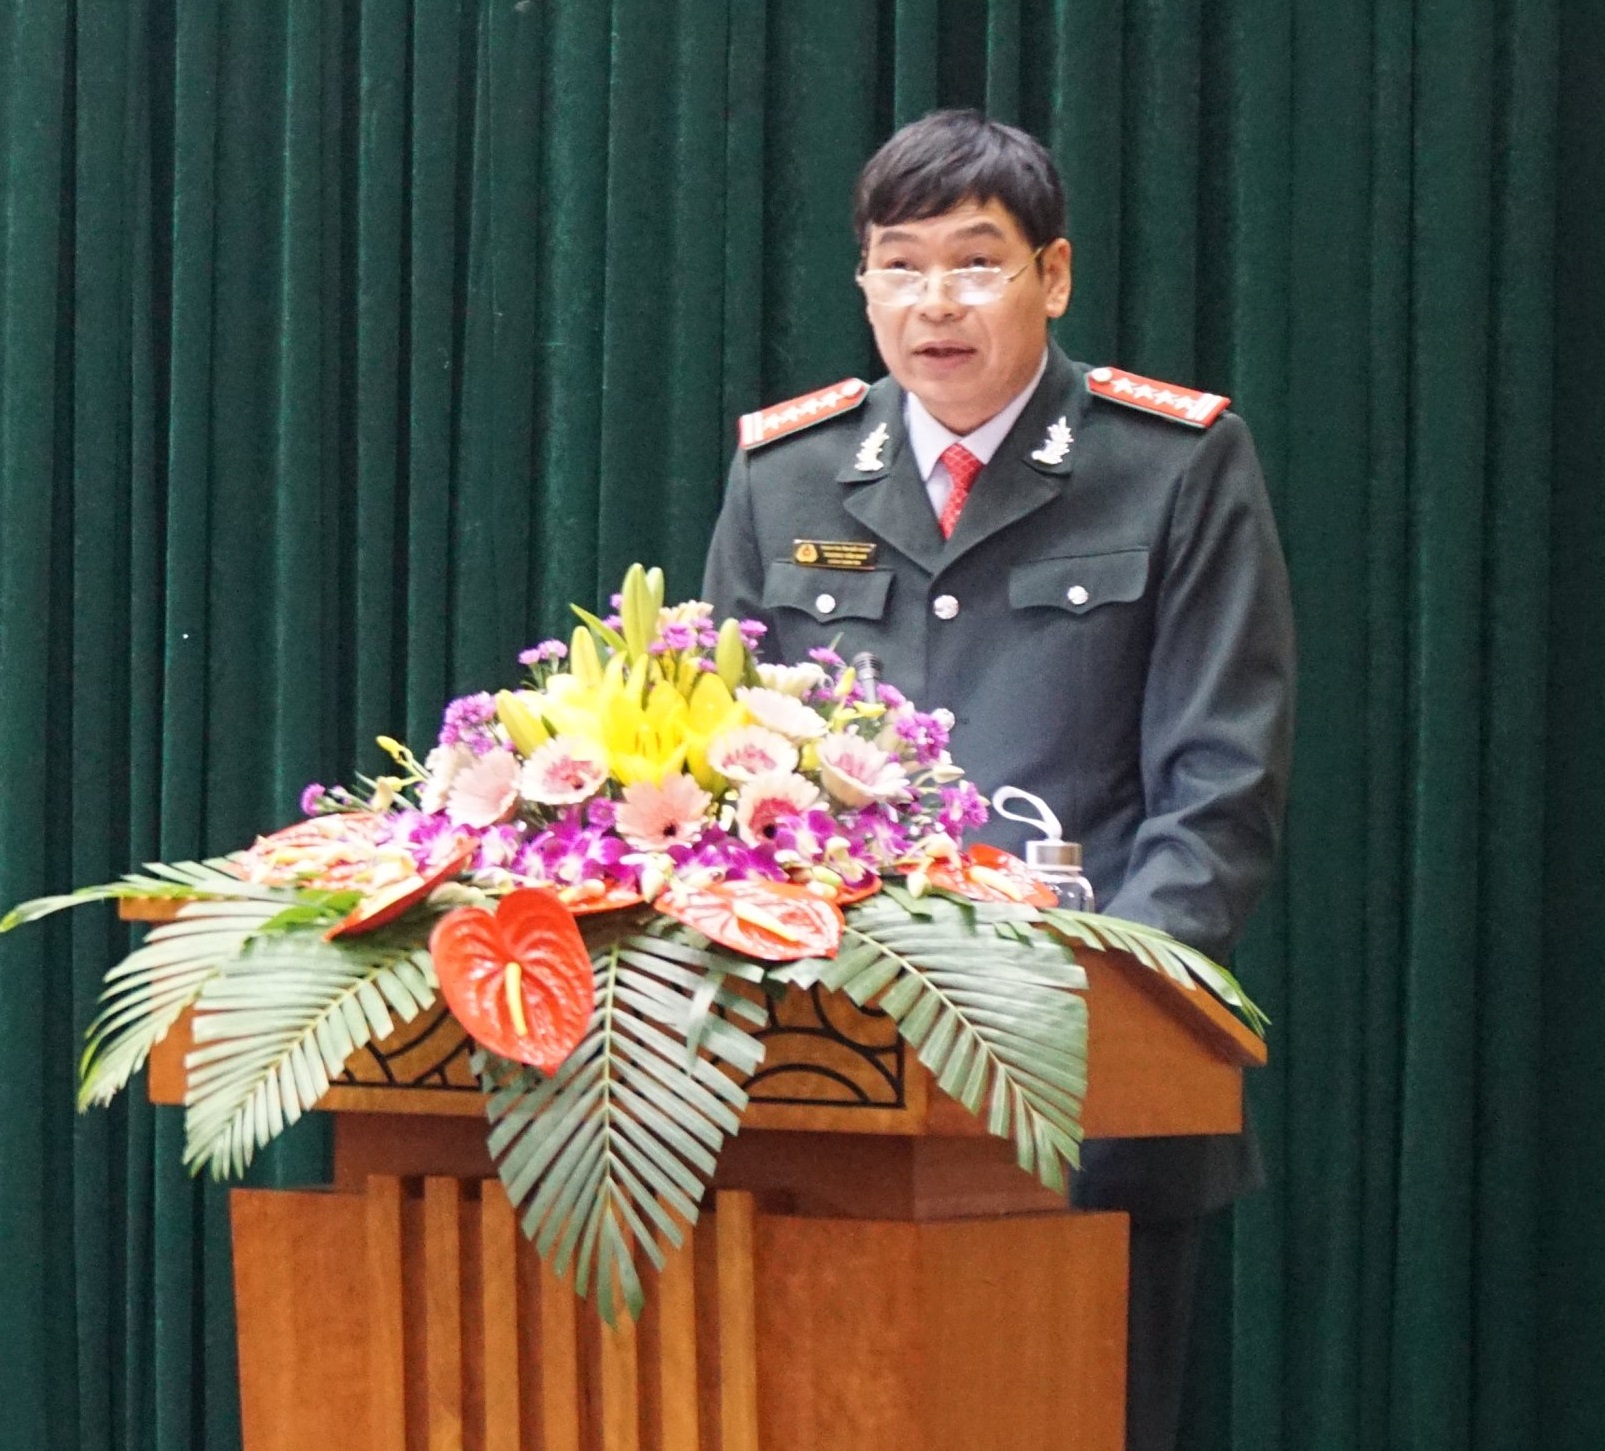 Ngành thanh tra tỉnh Bắc Giang tổ chức hội nghị tổng kết năm 2019 và triển khai nhiệm vụ năm 2020